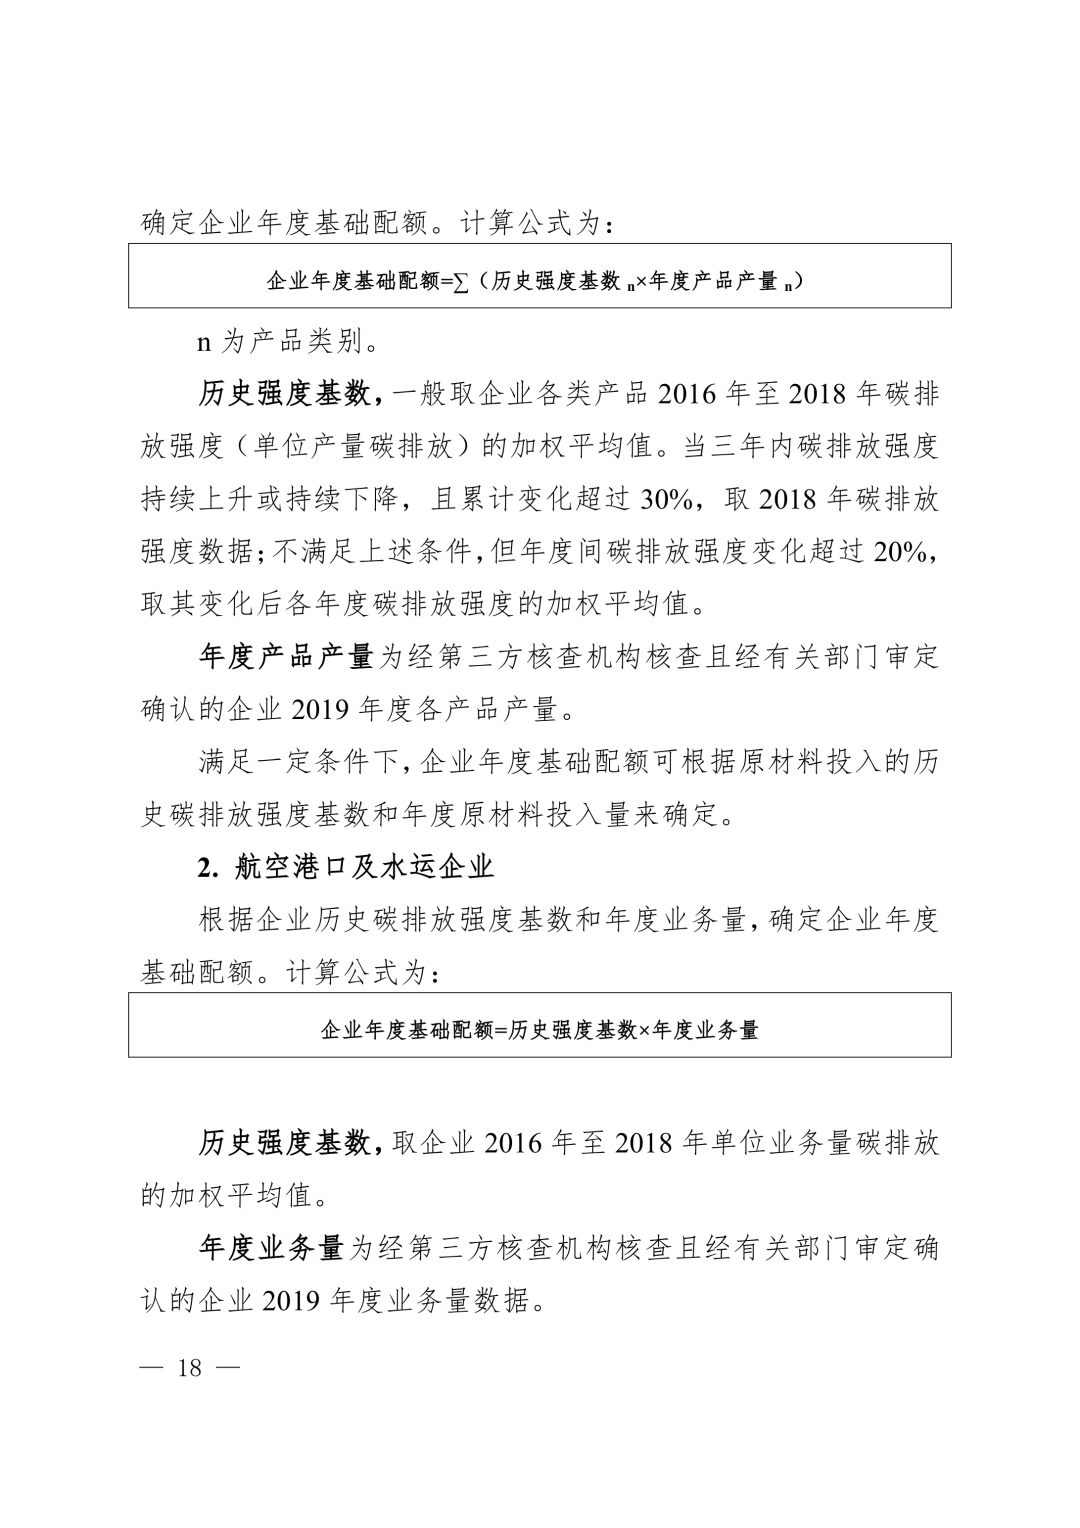 【关注】上海市生态环境局关于印发《上海市纳入碳排放配额管理单位名单（2019版）》及《上海市2019年碳排放配额分配方案》的通知(图18)